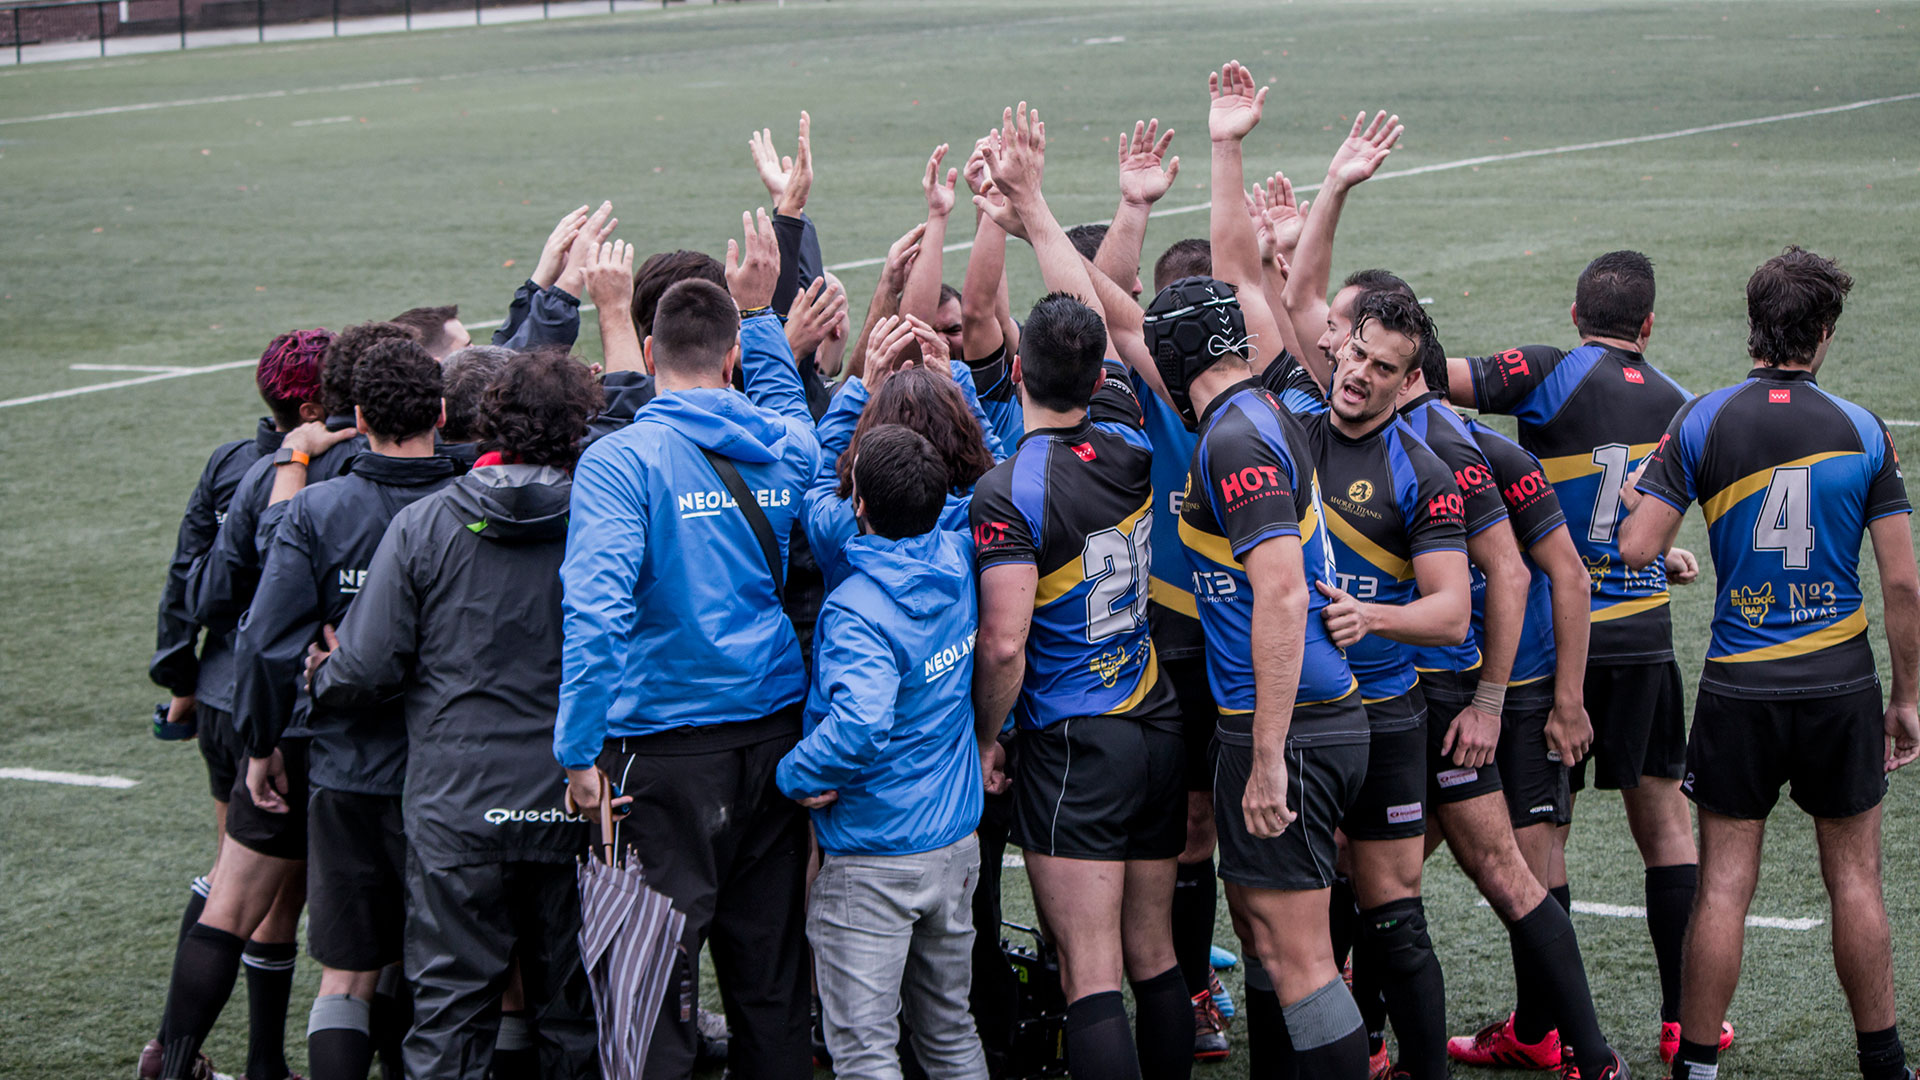 La gran competición europea del rugby gay arranca en Madrid